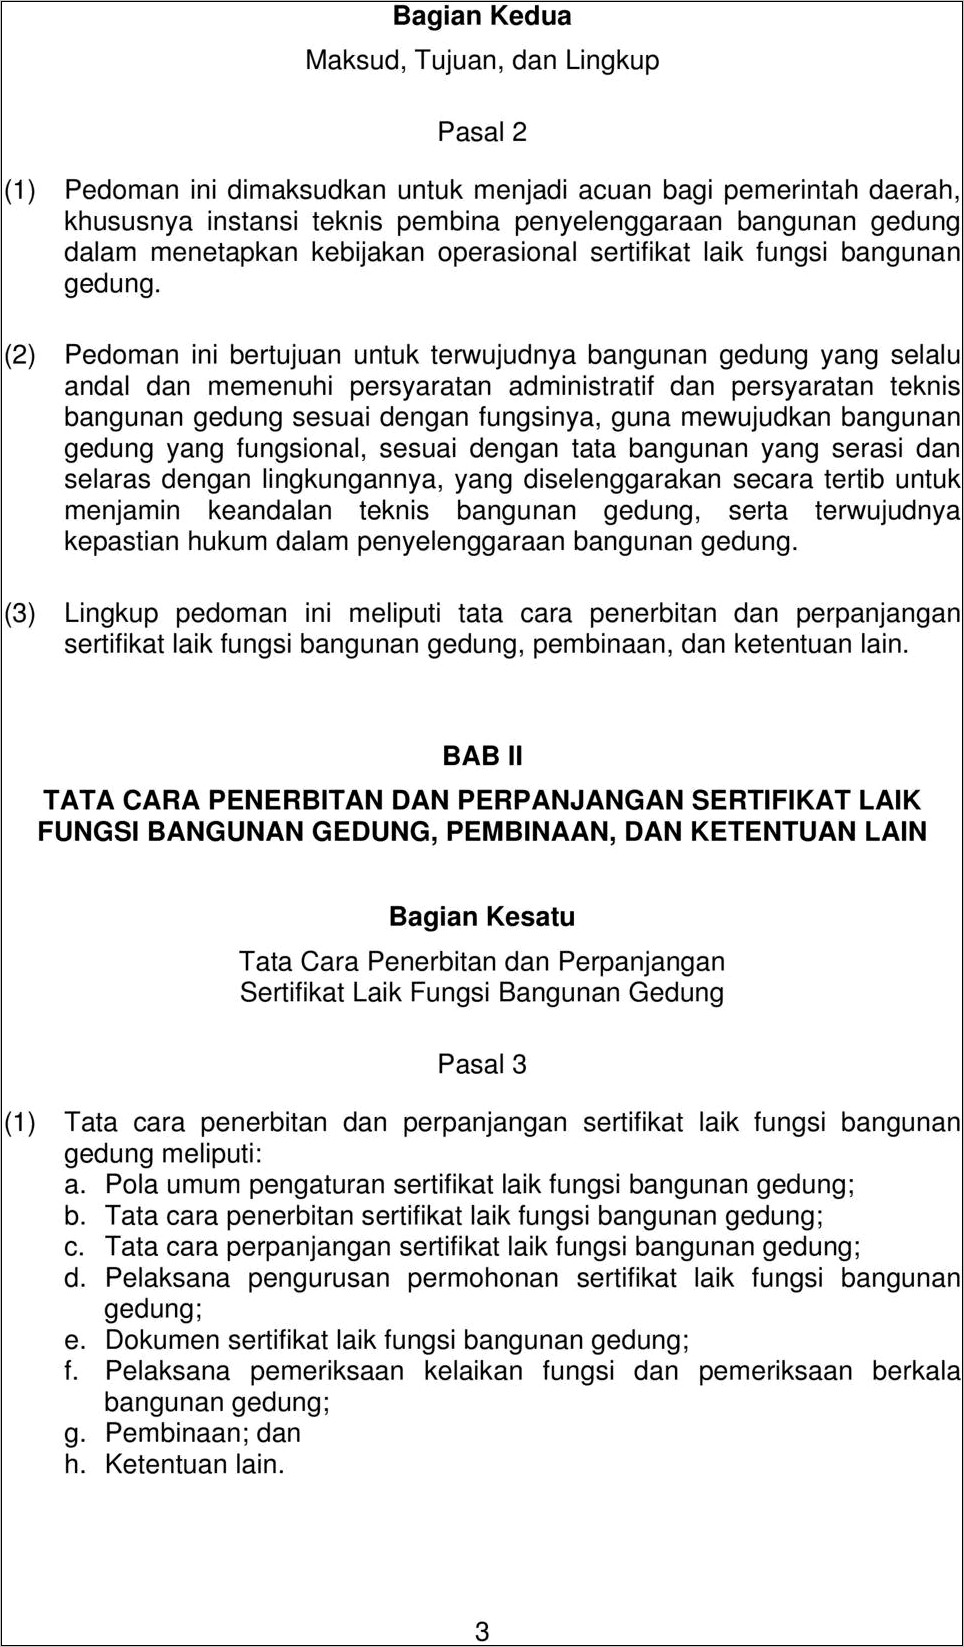 Contoh Surat Permohonan Slf Kota Bandung